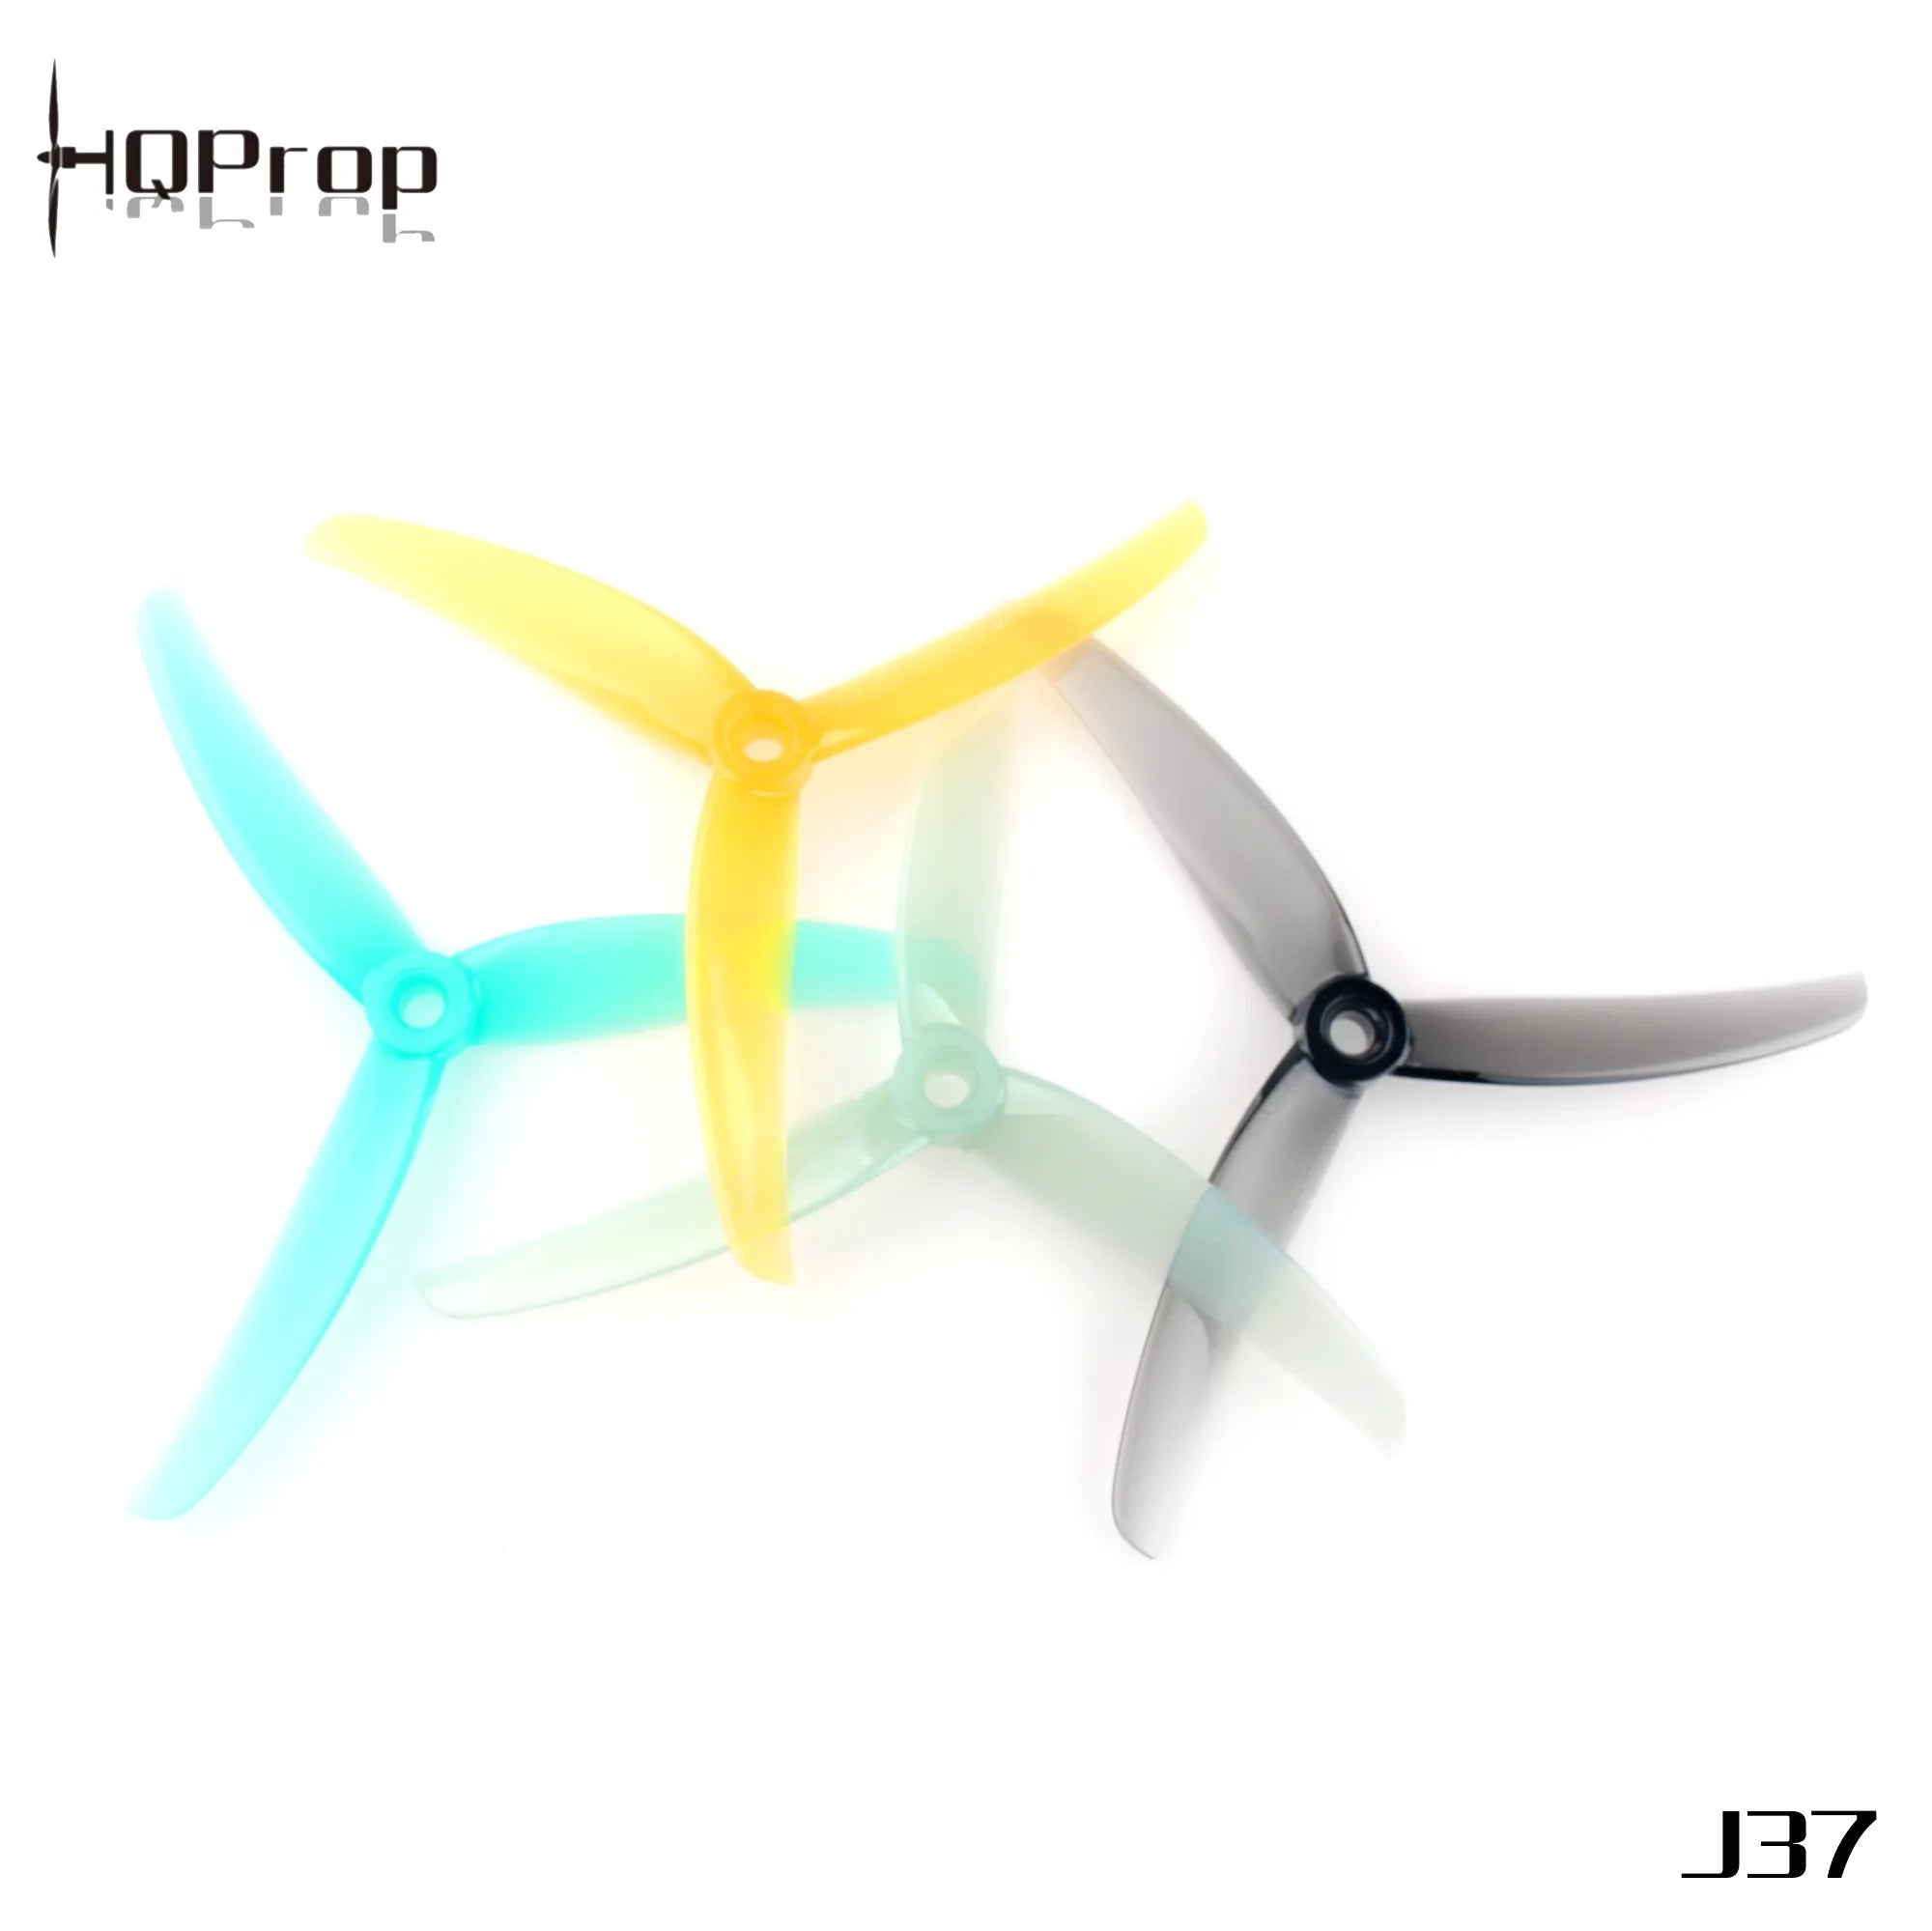 HQ Juicy Prop J37 4.9" Propeller